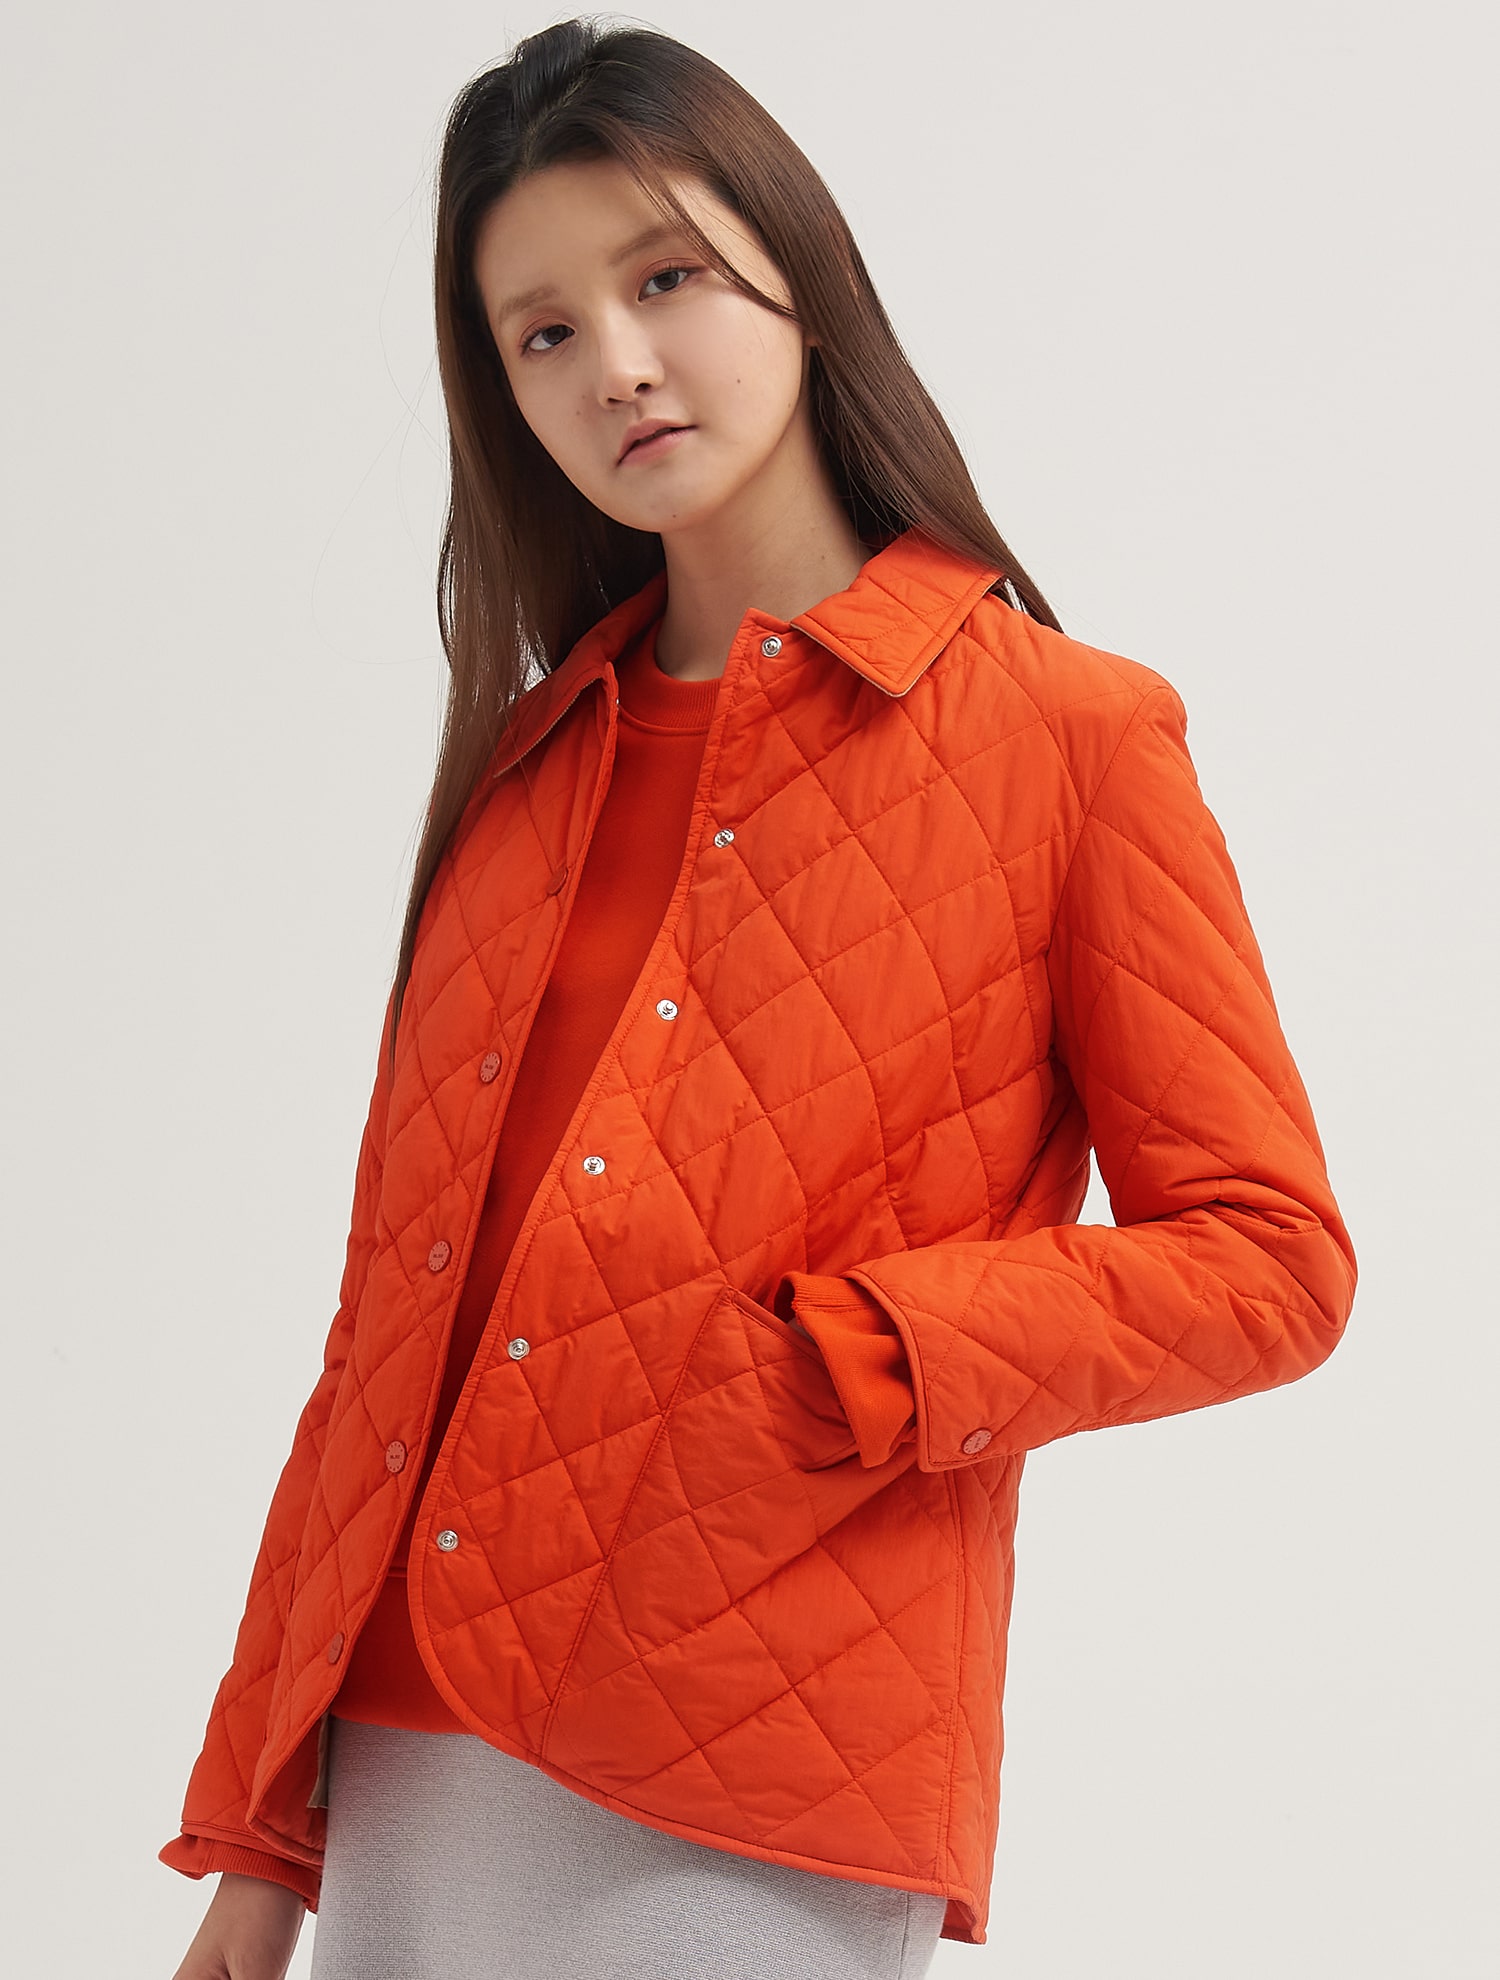 short orange jacket